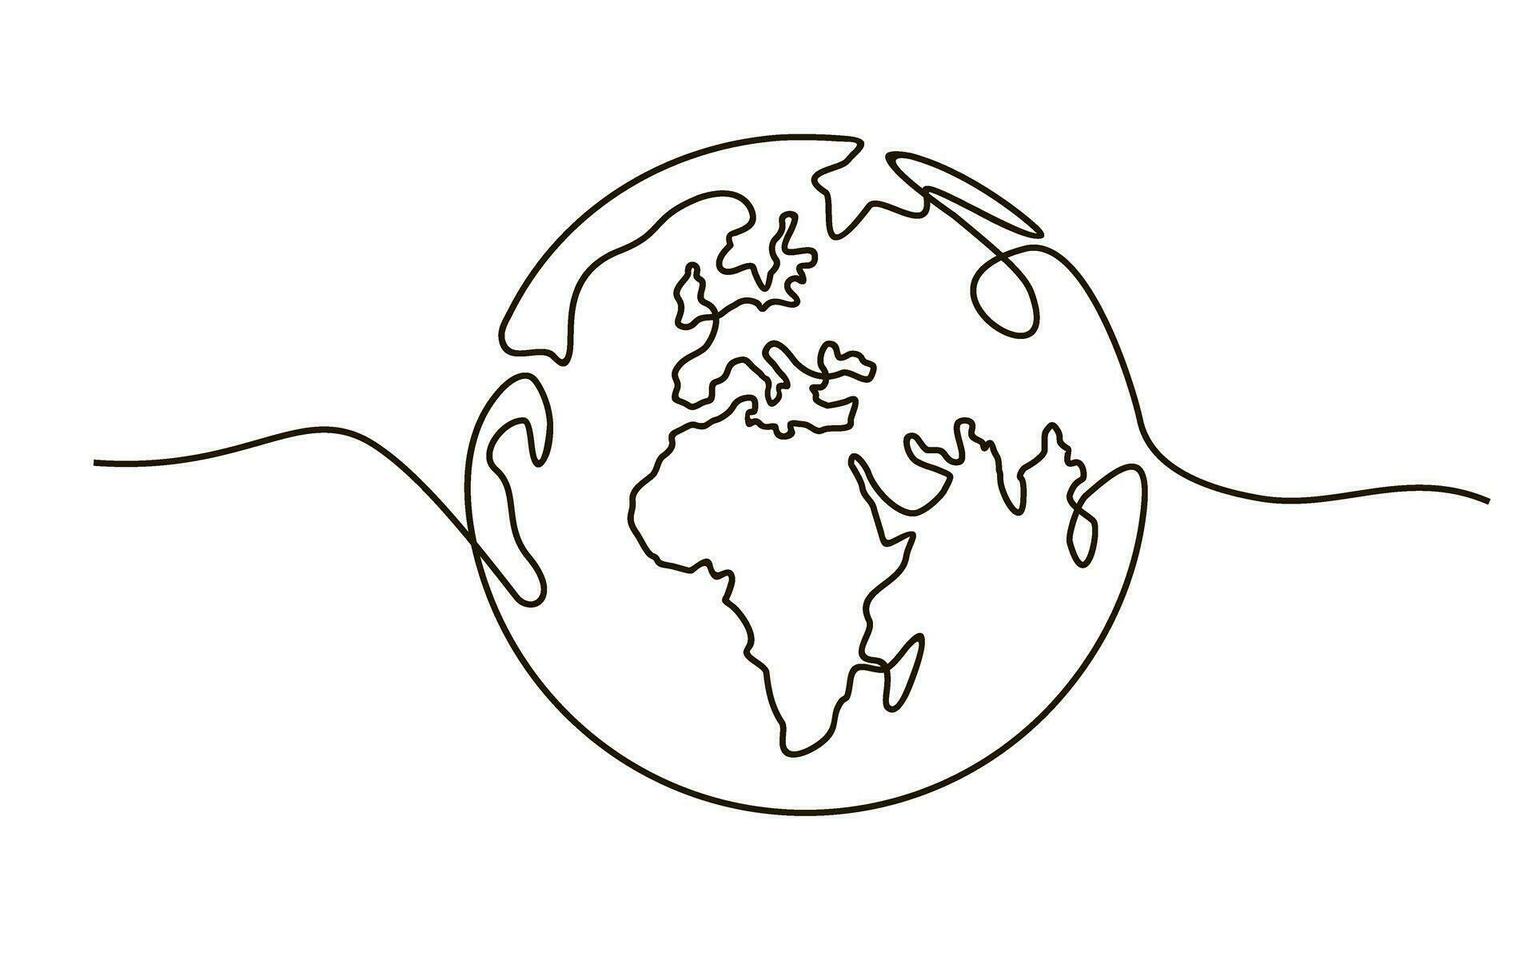 globo. terra globo 1 linha desenhando do mundo mapa minimalista vetor ilustração isolado em branco fundo. contínuo linha desenho.